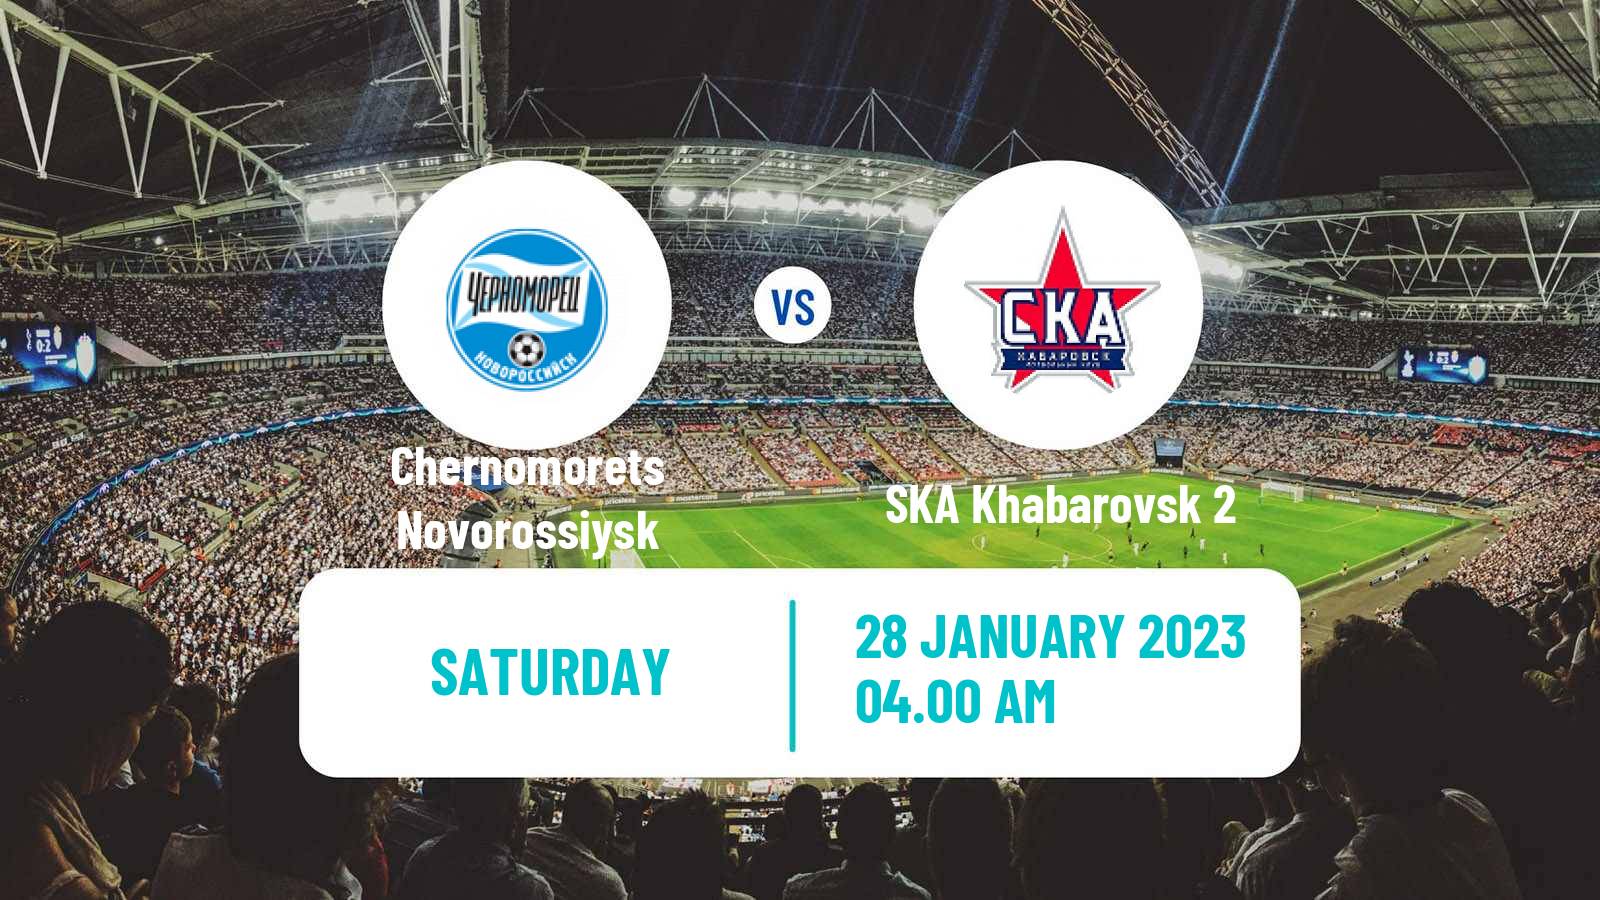 Soccer Club Friendly Chernomorets Novorossiysk - SKA Khabarovsk 2